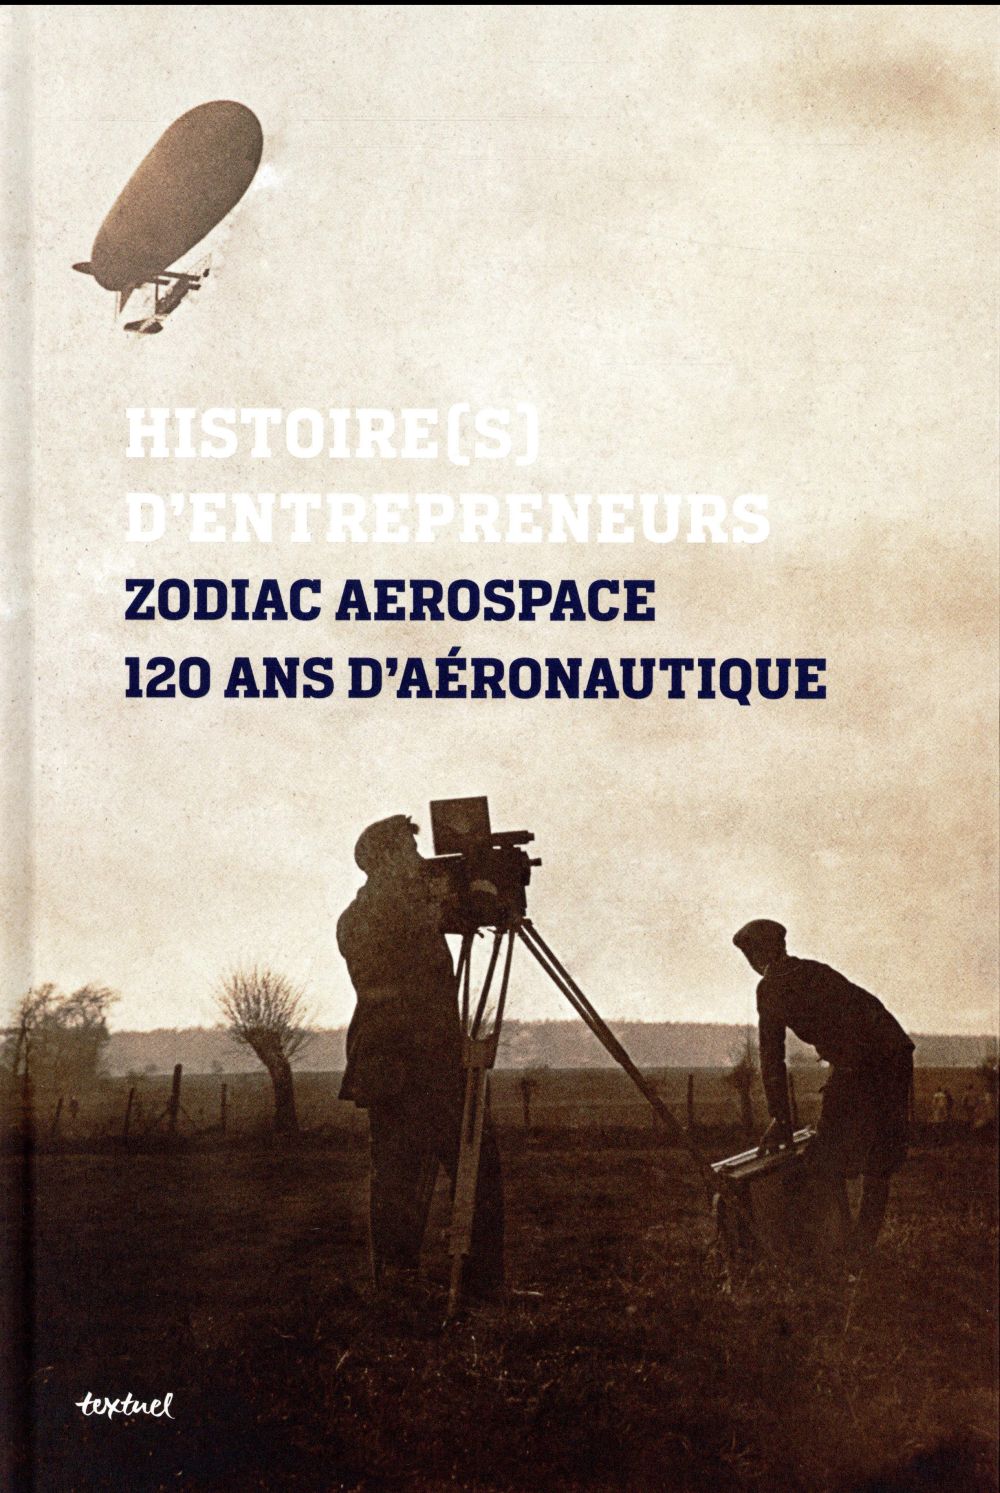 ZODIAC AEROSPACE HISTOIRE(S) D'ENTREPRENEURS - 120 ANS D'AERONAUTIQUE